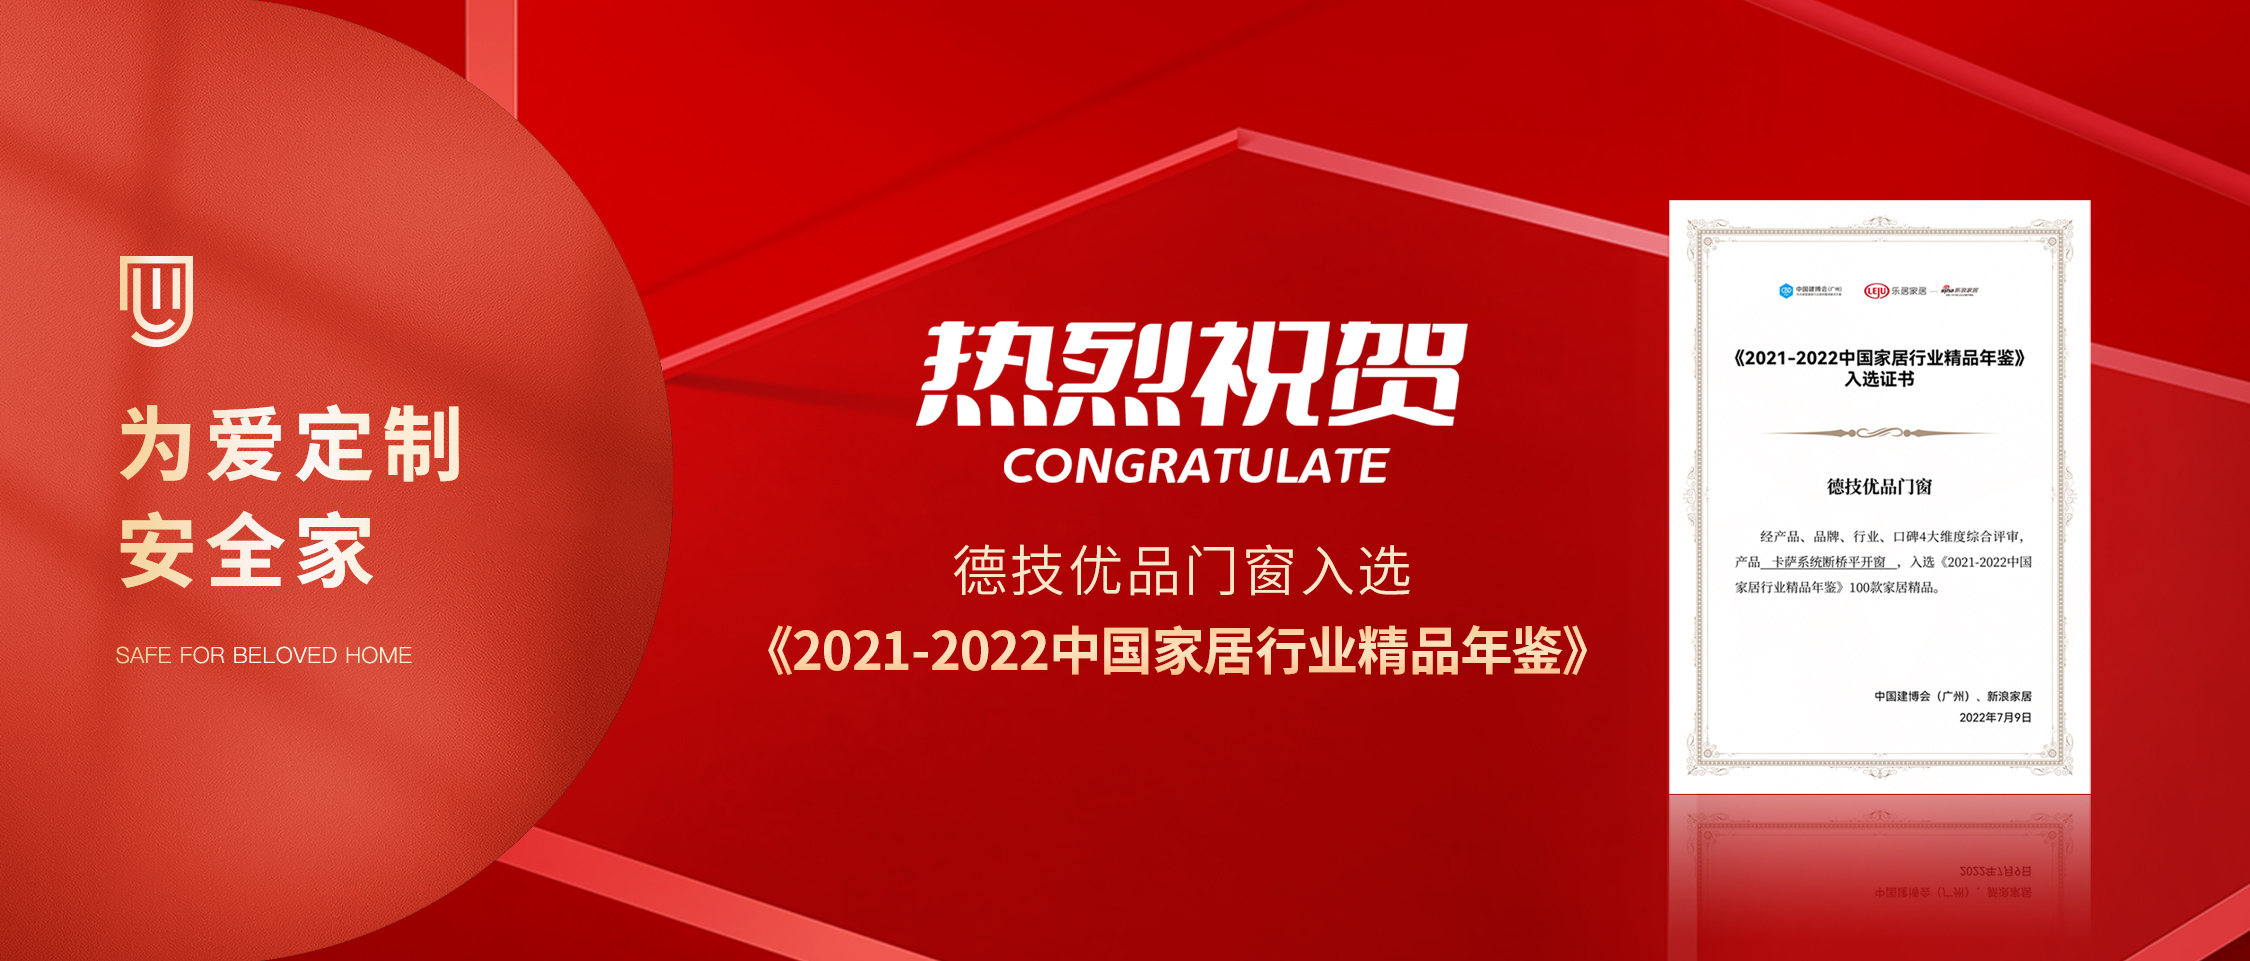 米乐m6
卡萨系列入选建博会《2021-2022中国家居行业精品年鉴》